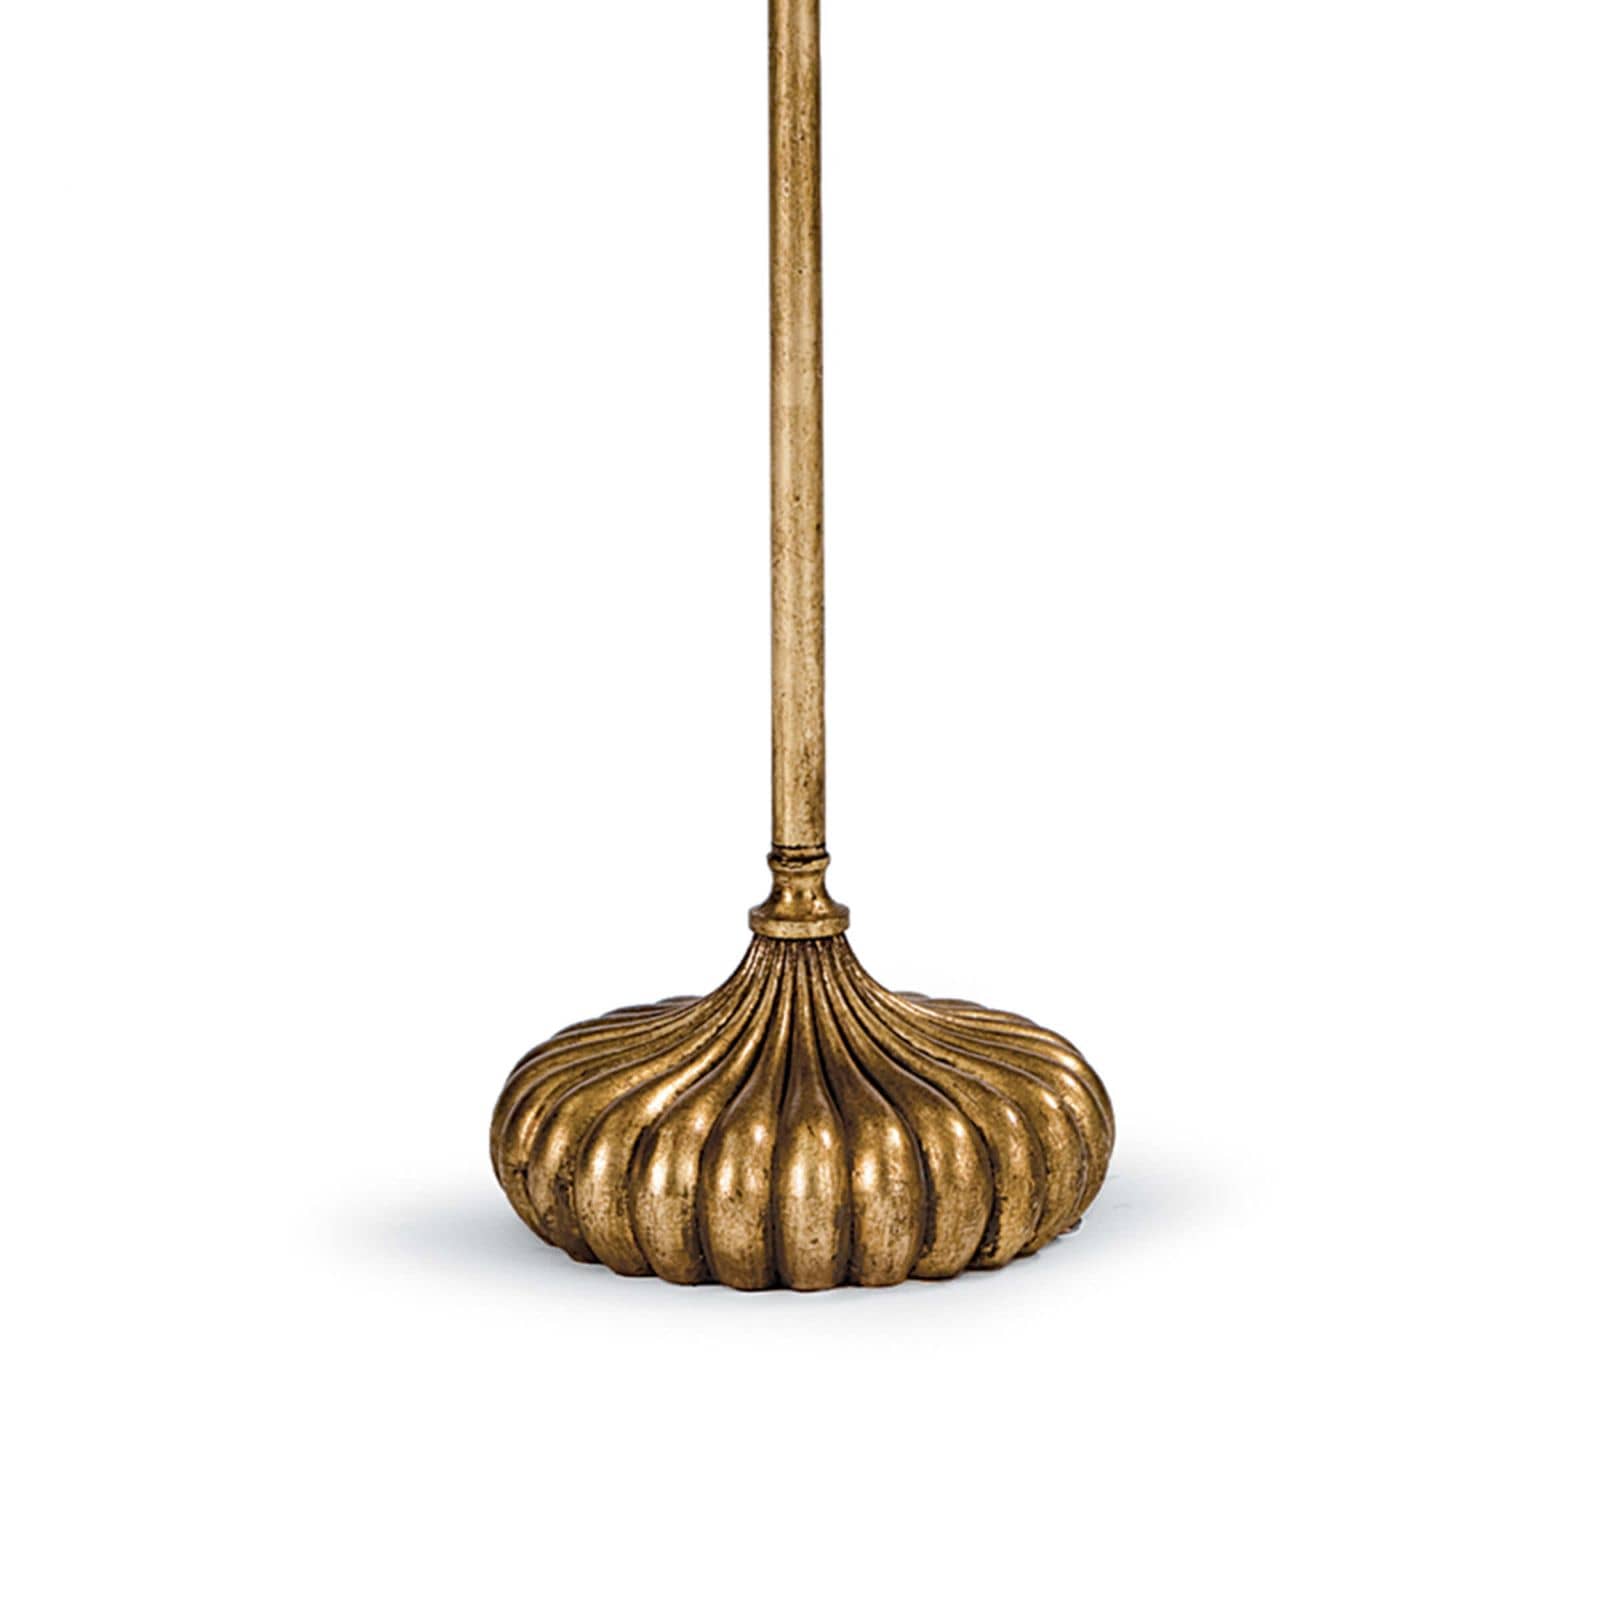 Clove Stem Floor Lamp in Antique Gold Leaf by Regina Andrew